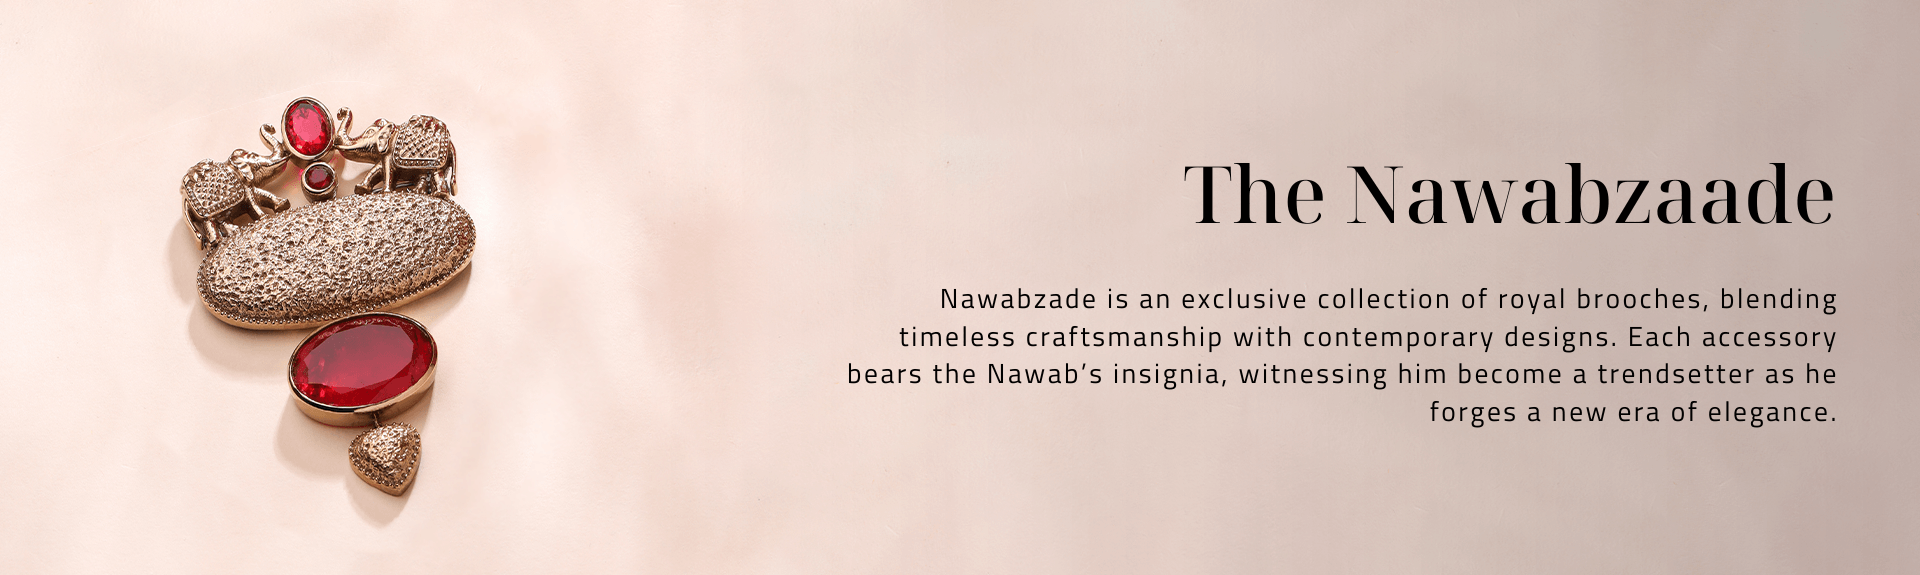 The Nawabzaade